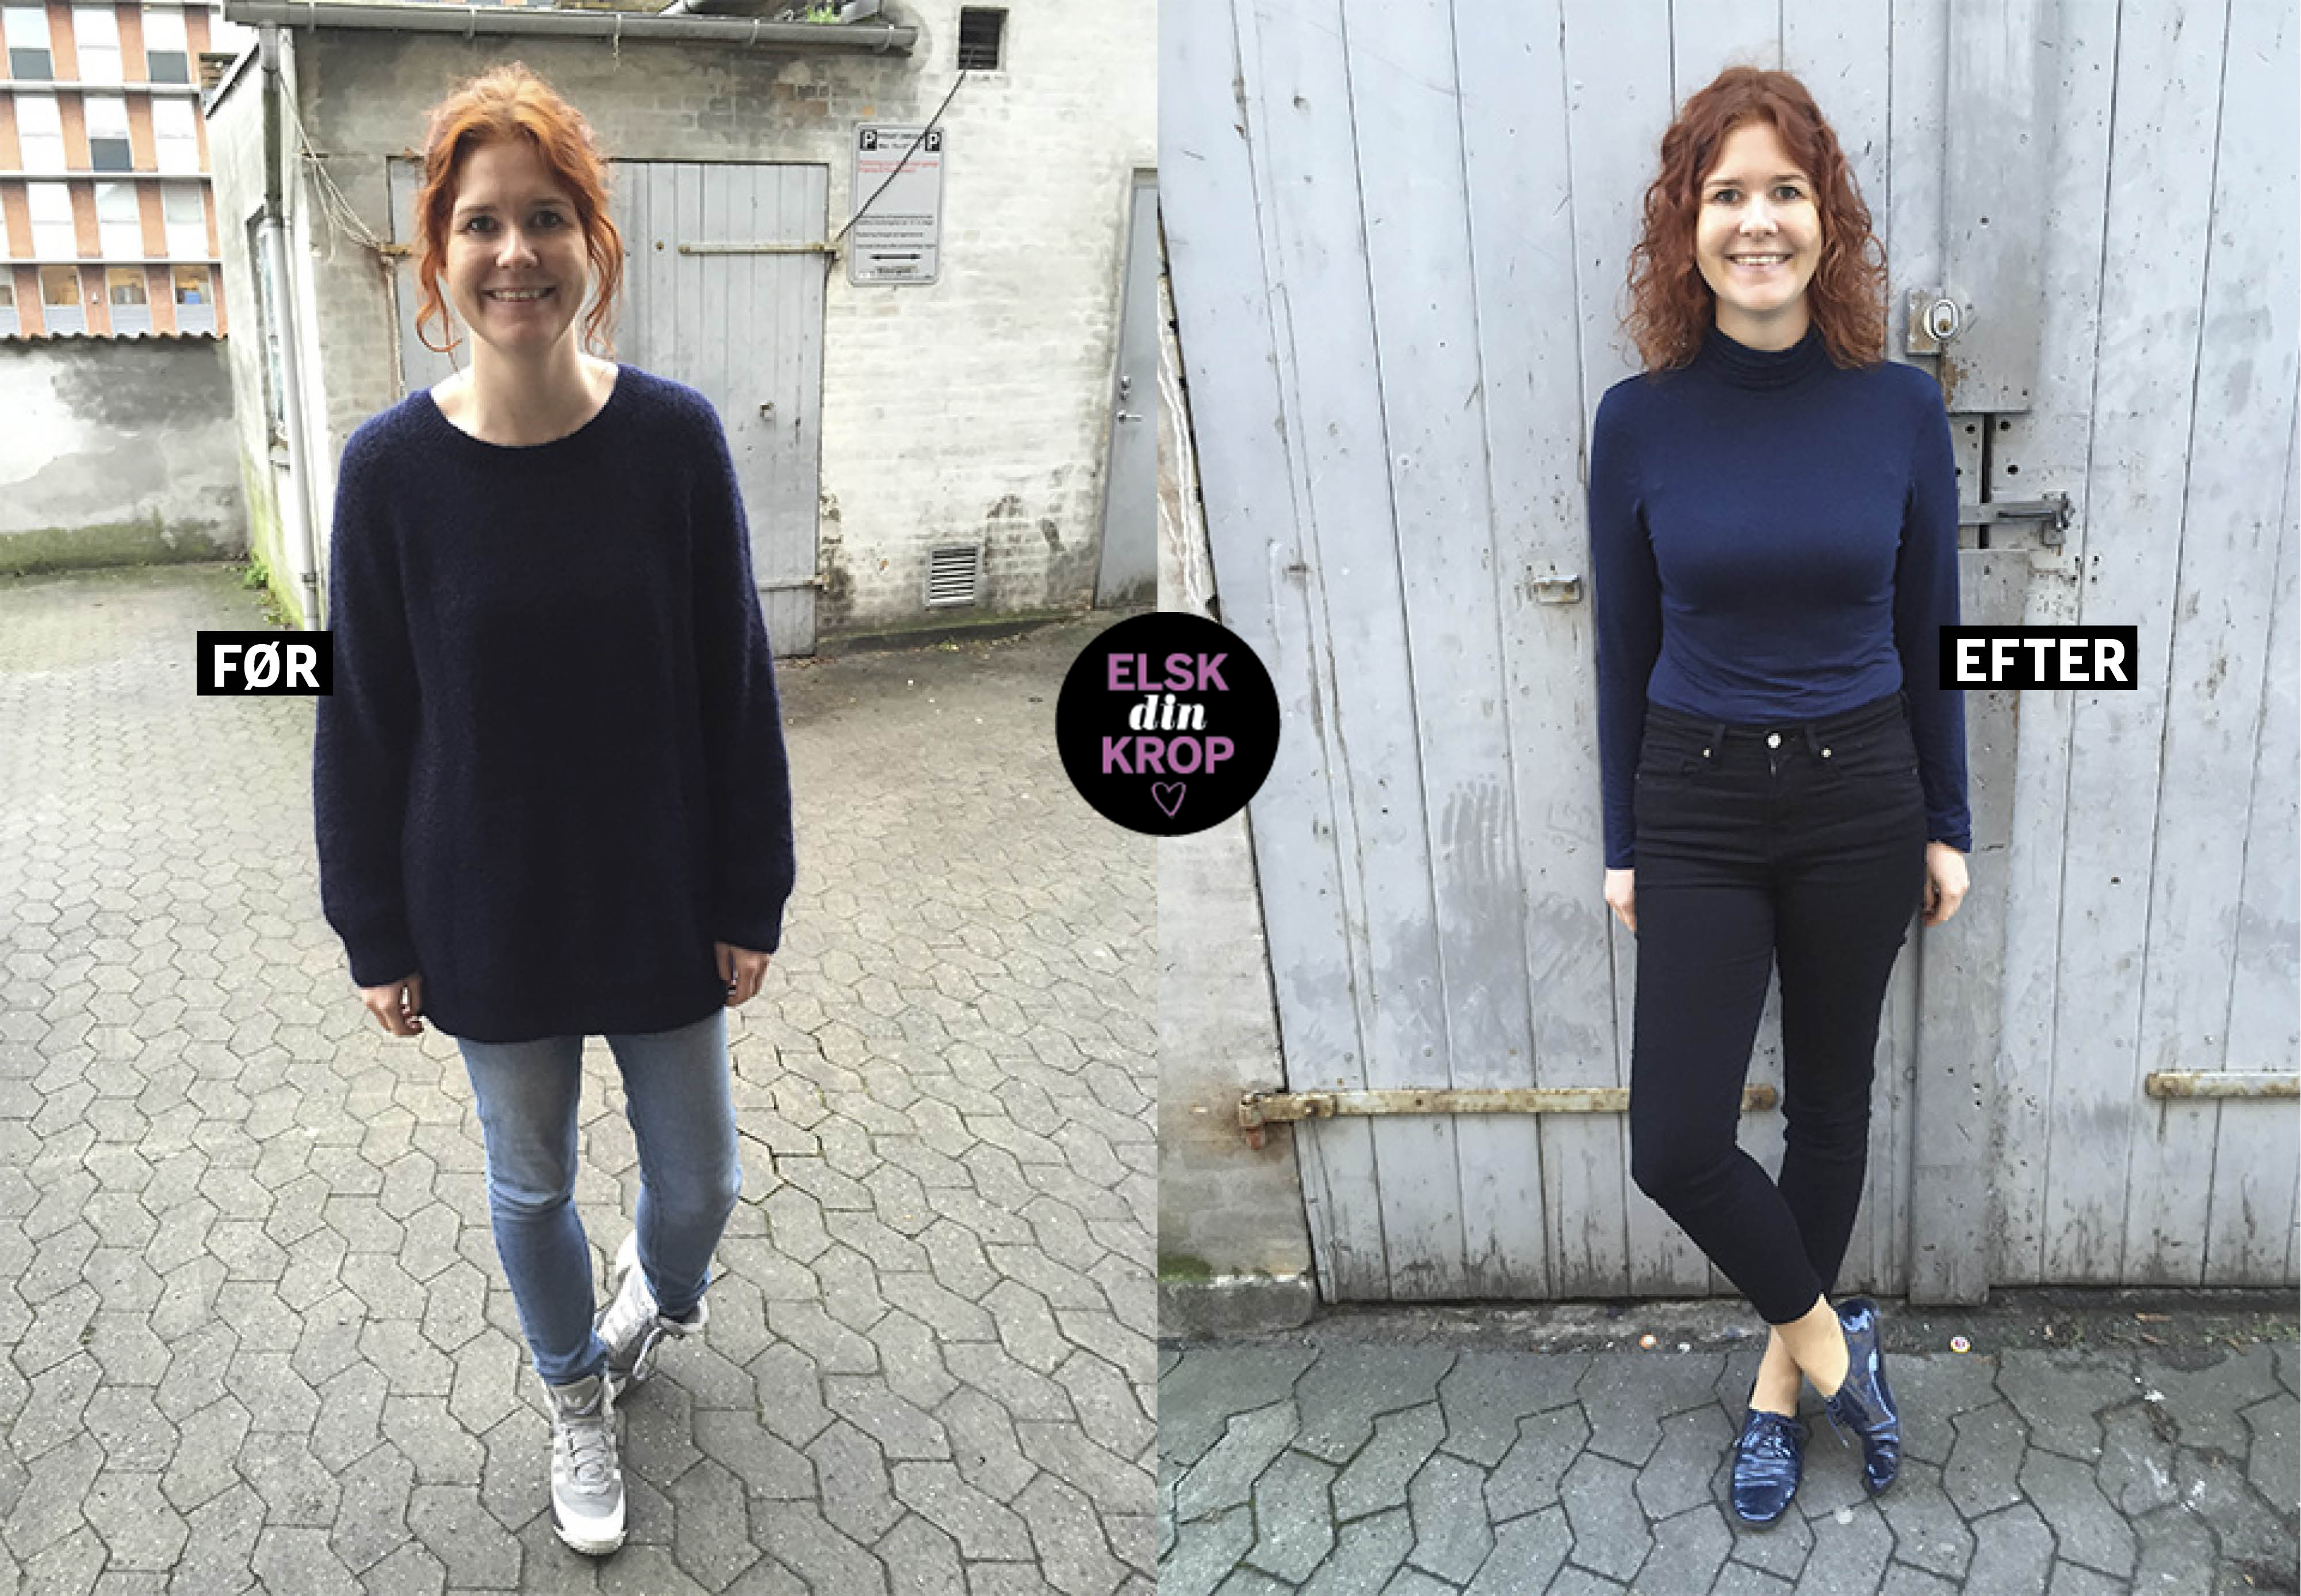 Woman tester: “Jeg gik i stramt tøj i en uge – ændrede syn på mig selv” | Woman.dk